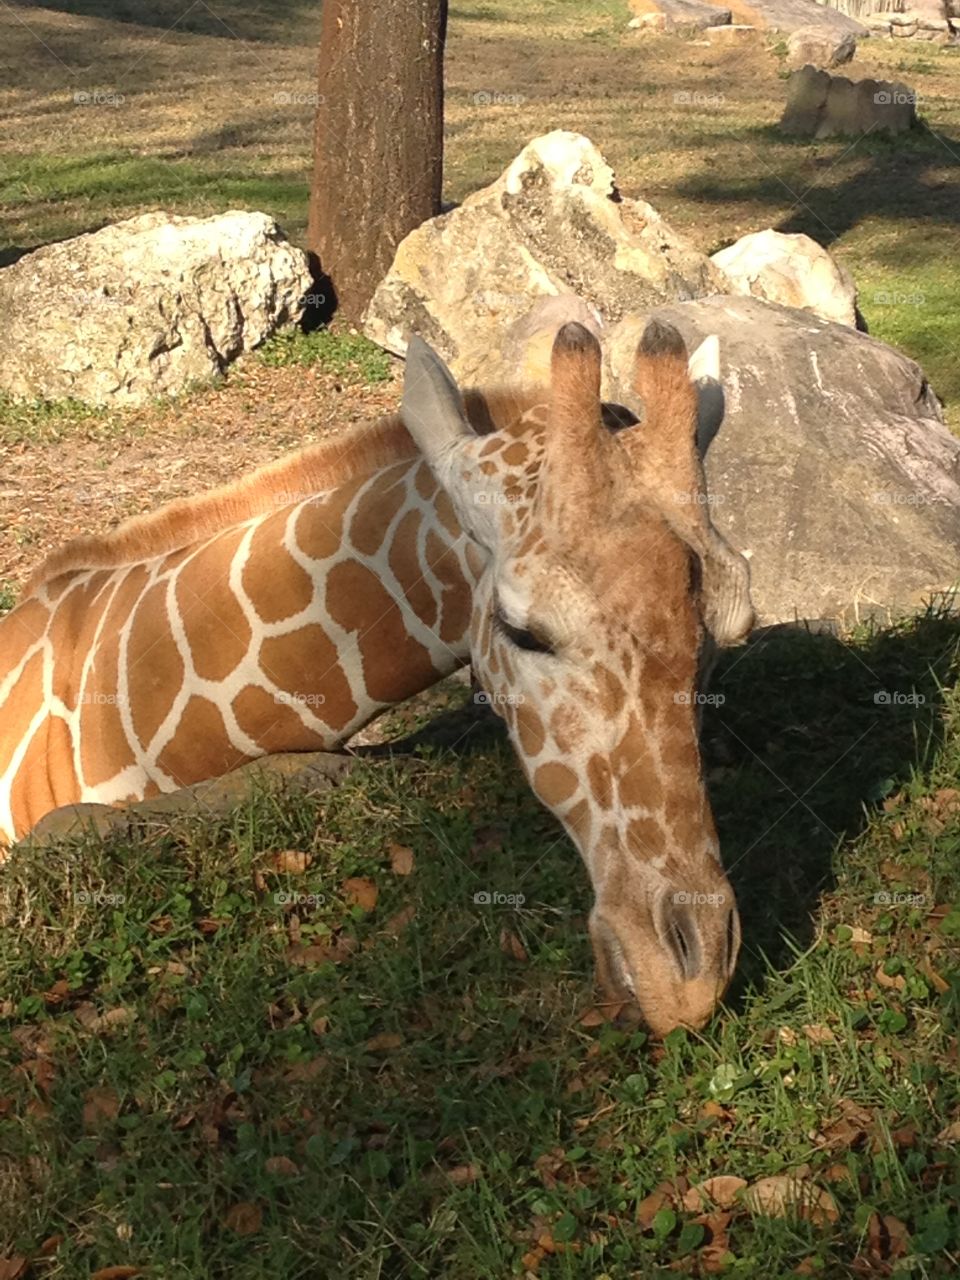 Giraffe
Busch Gardens